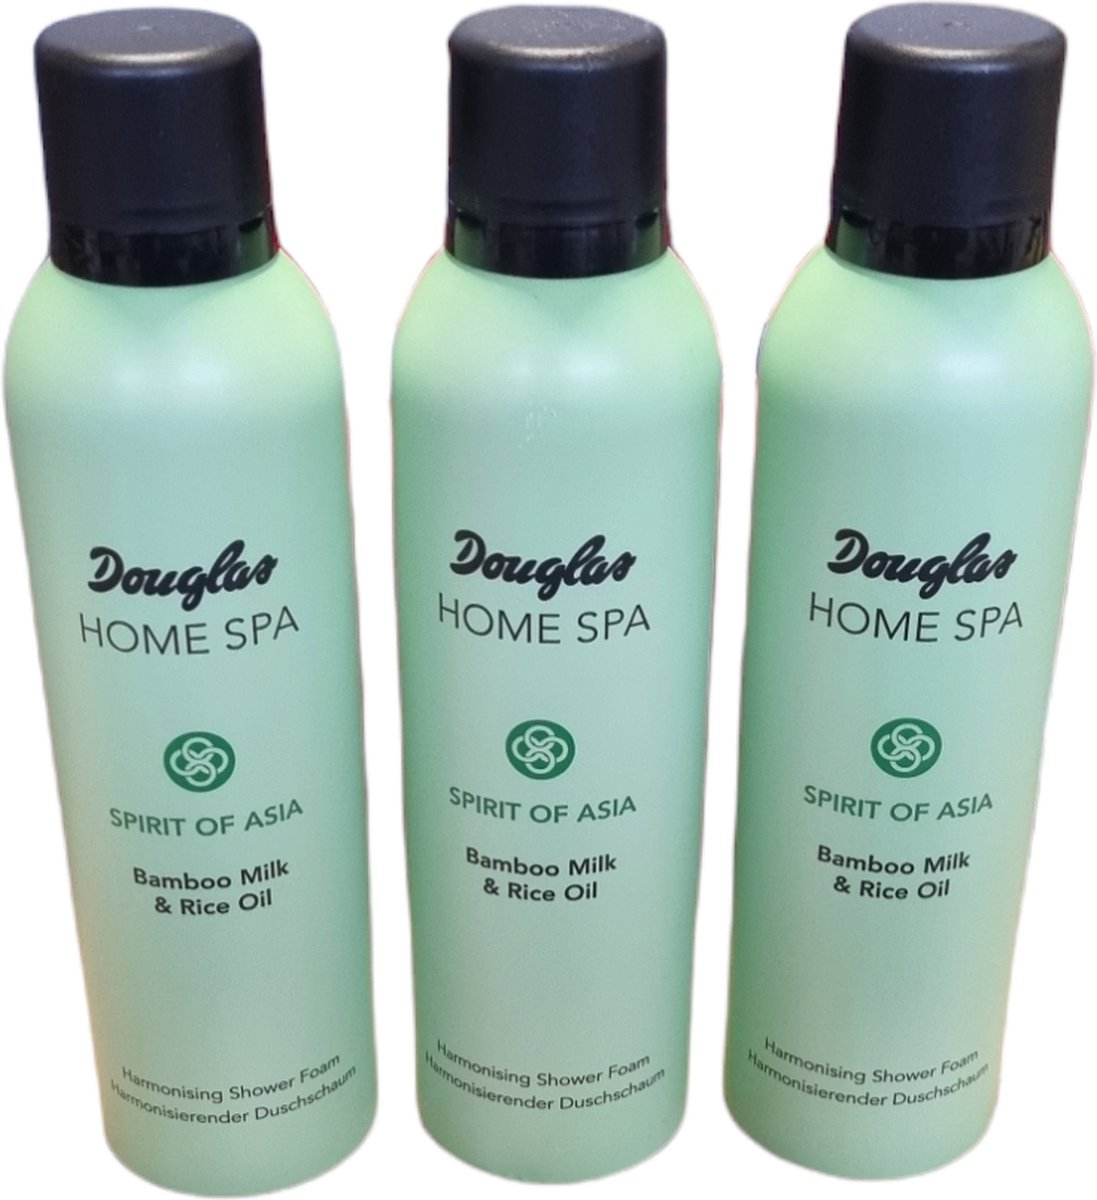 3 stuks Douglas Home spa Spirit of Asia - Bamboo Milk & Rice Oil - Harmonising Shower foam 200 ml